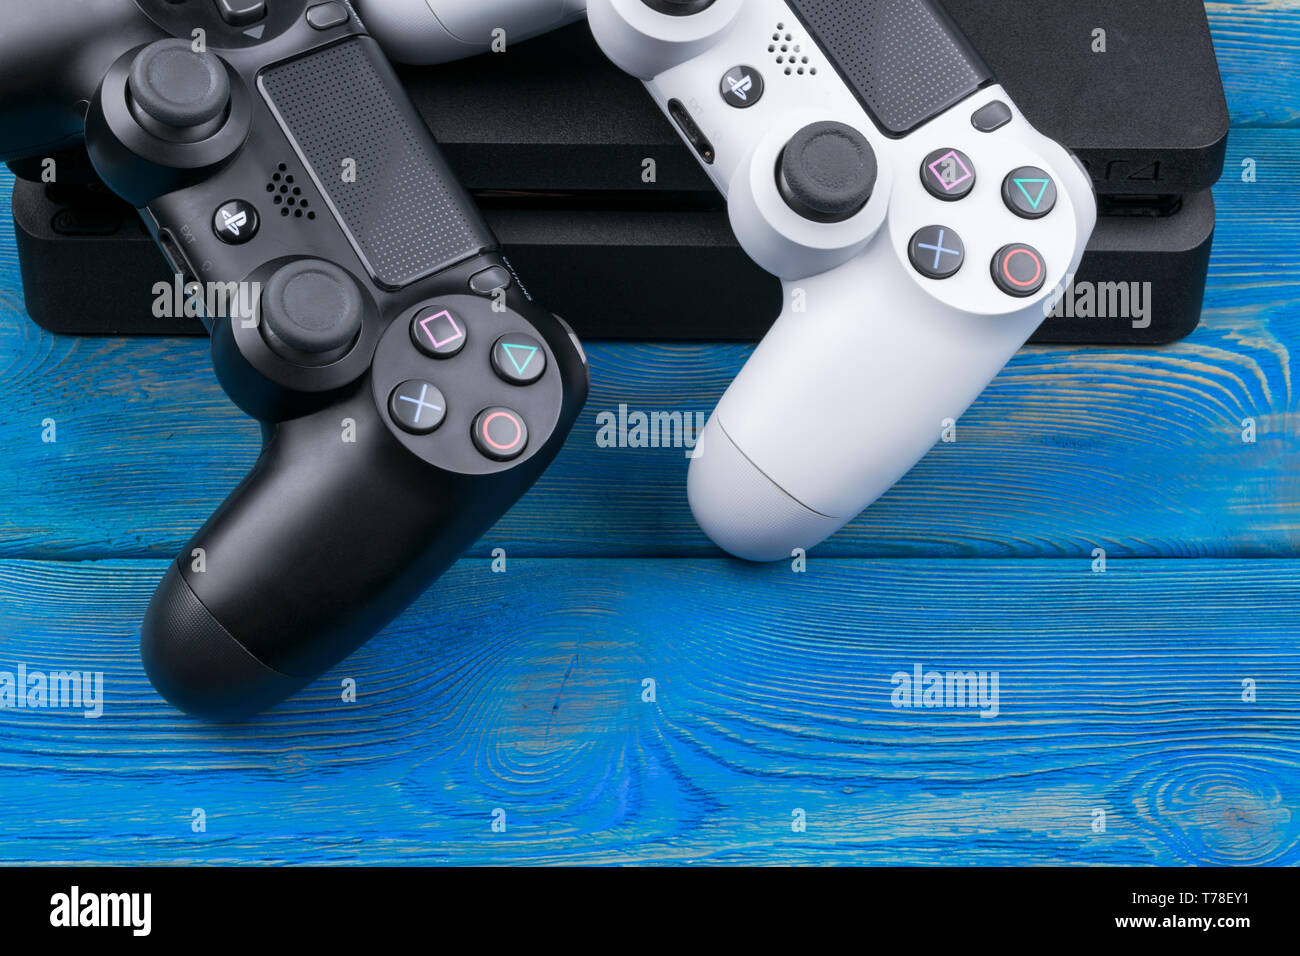 Sony PlayStation 4 Slim 1Tb + 2 Dual Shock 4